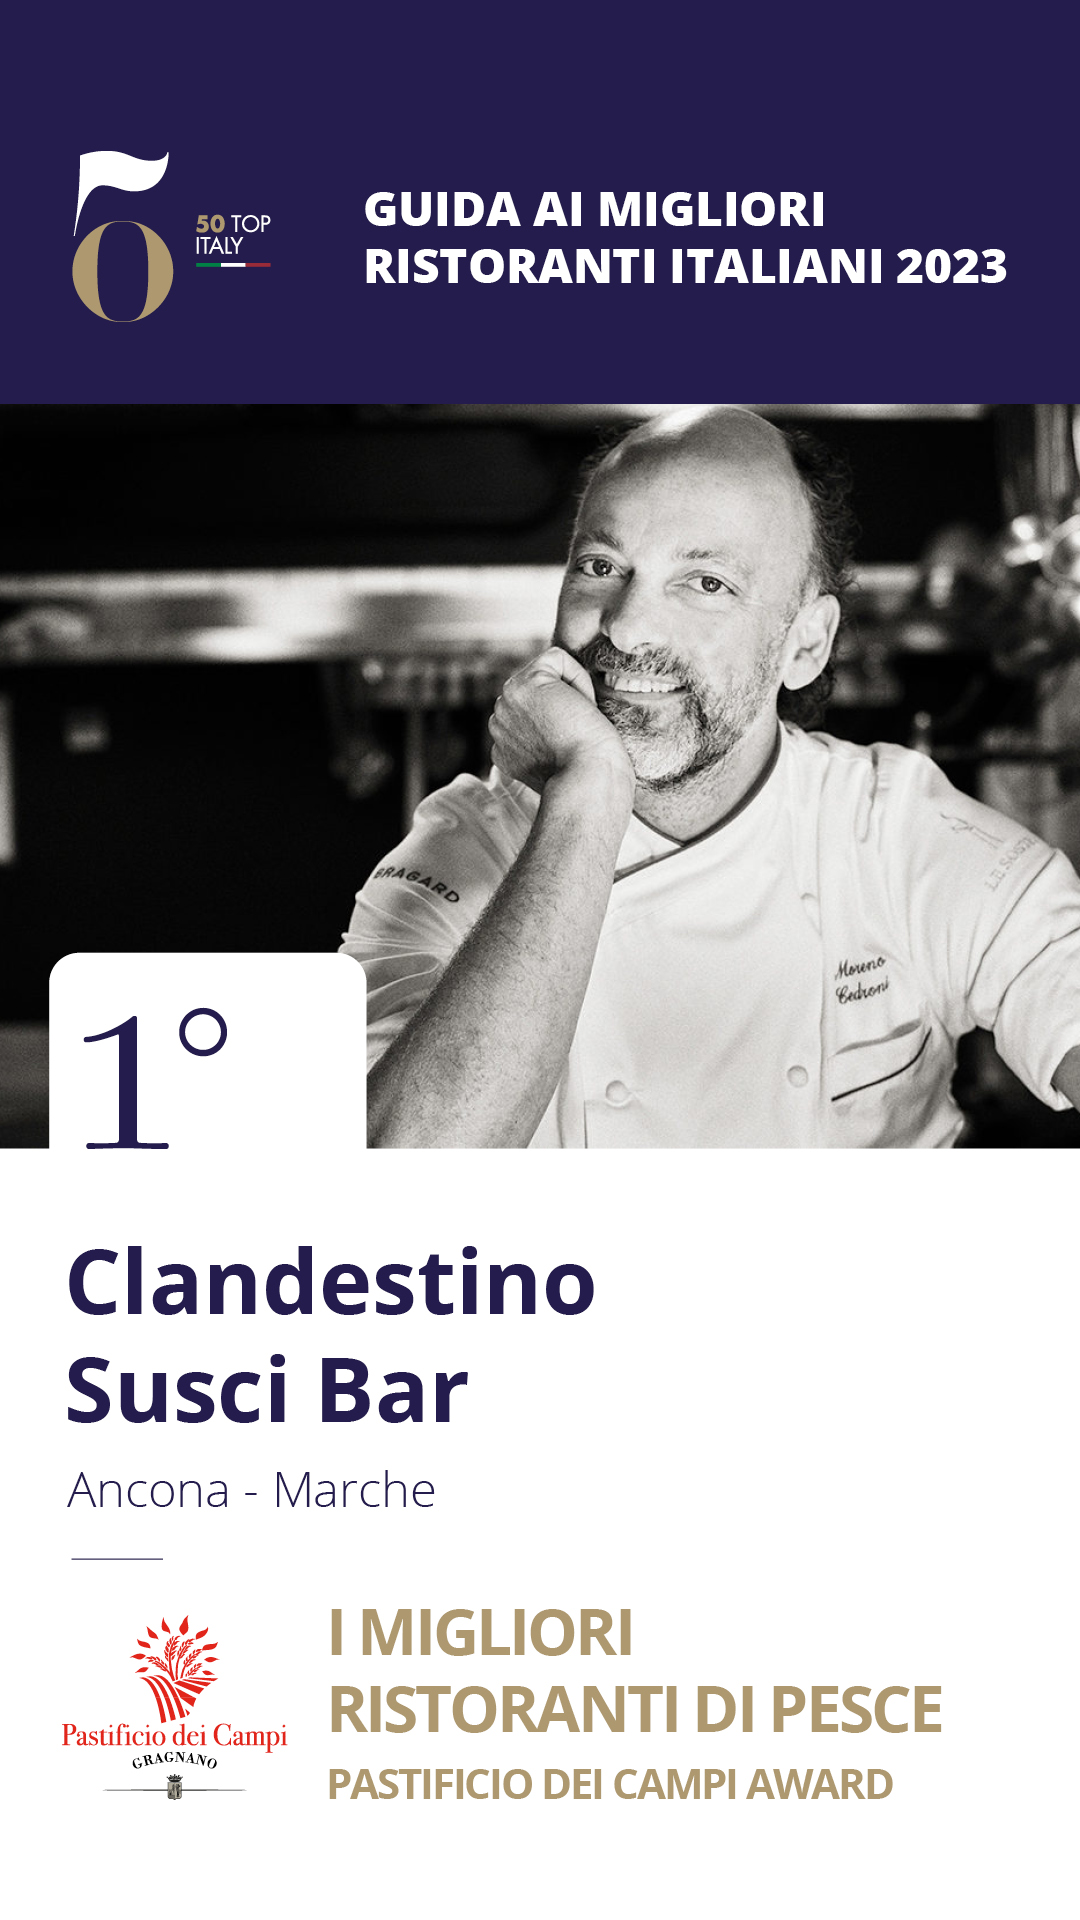 1 - Clandestino Susci Bar – Ancona, Marche